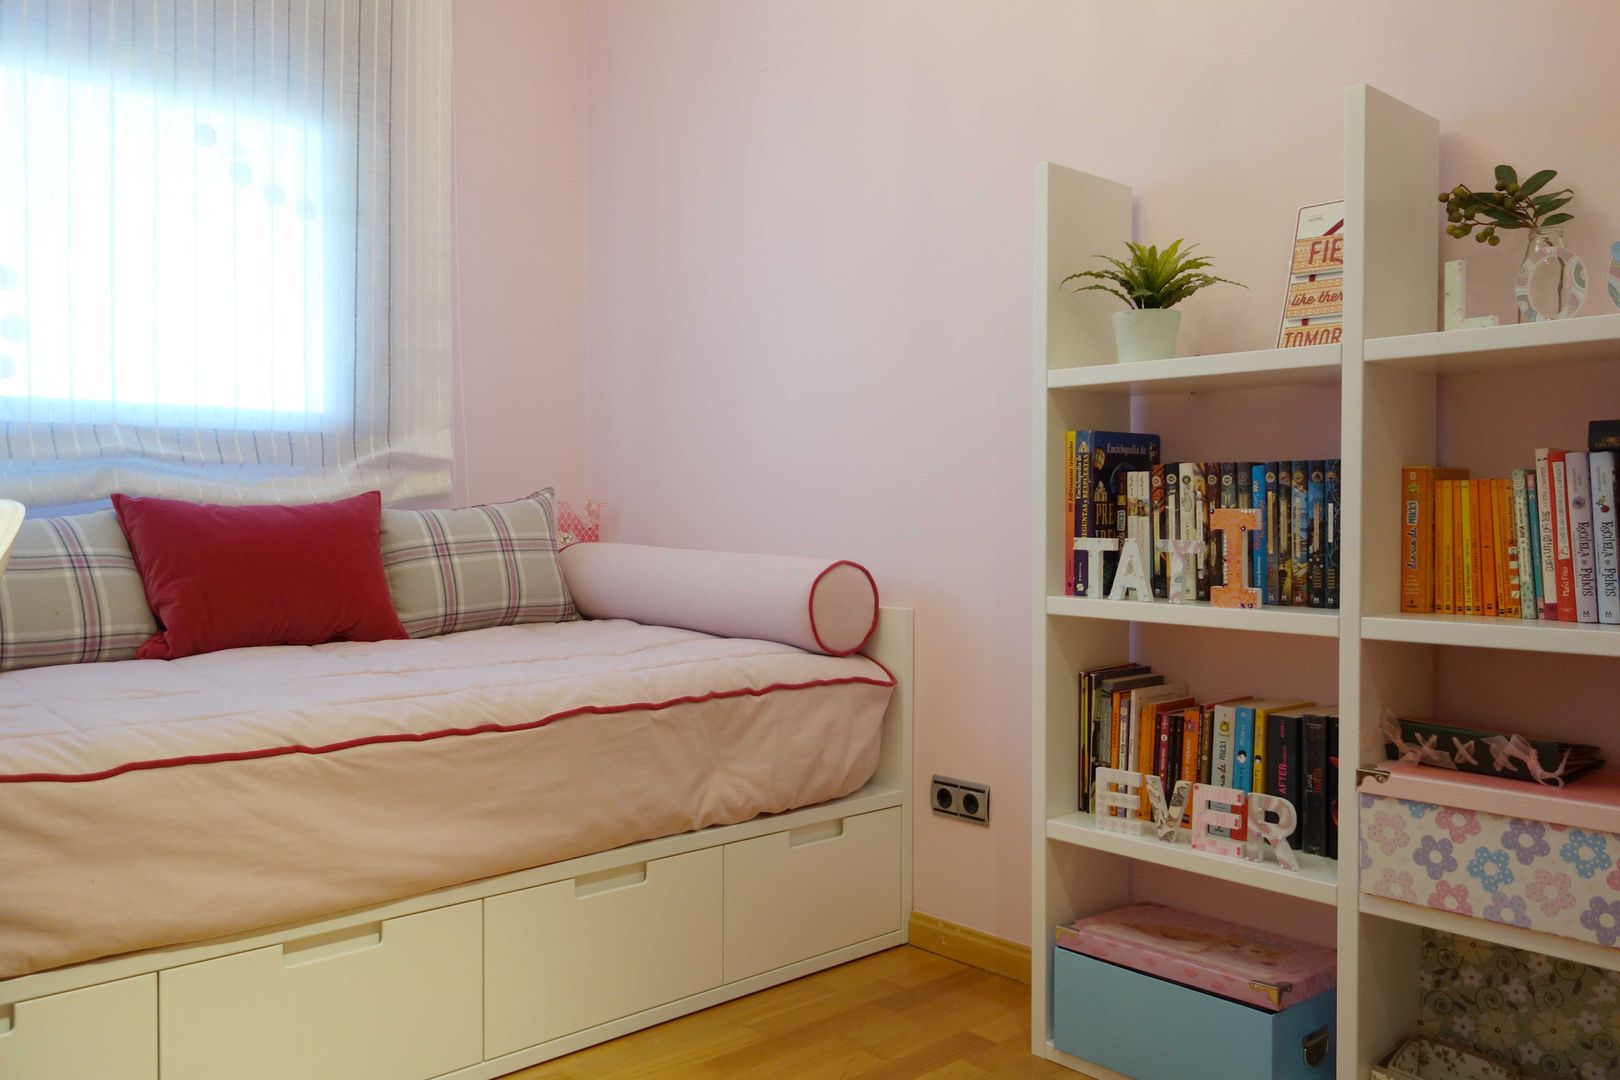 Dormitorio de niña a adolescente, Noelia Villalba Interiorista Noelia Villalba Interiorista Nursery/kid’s room